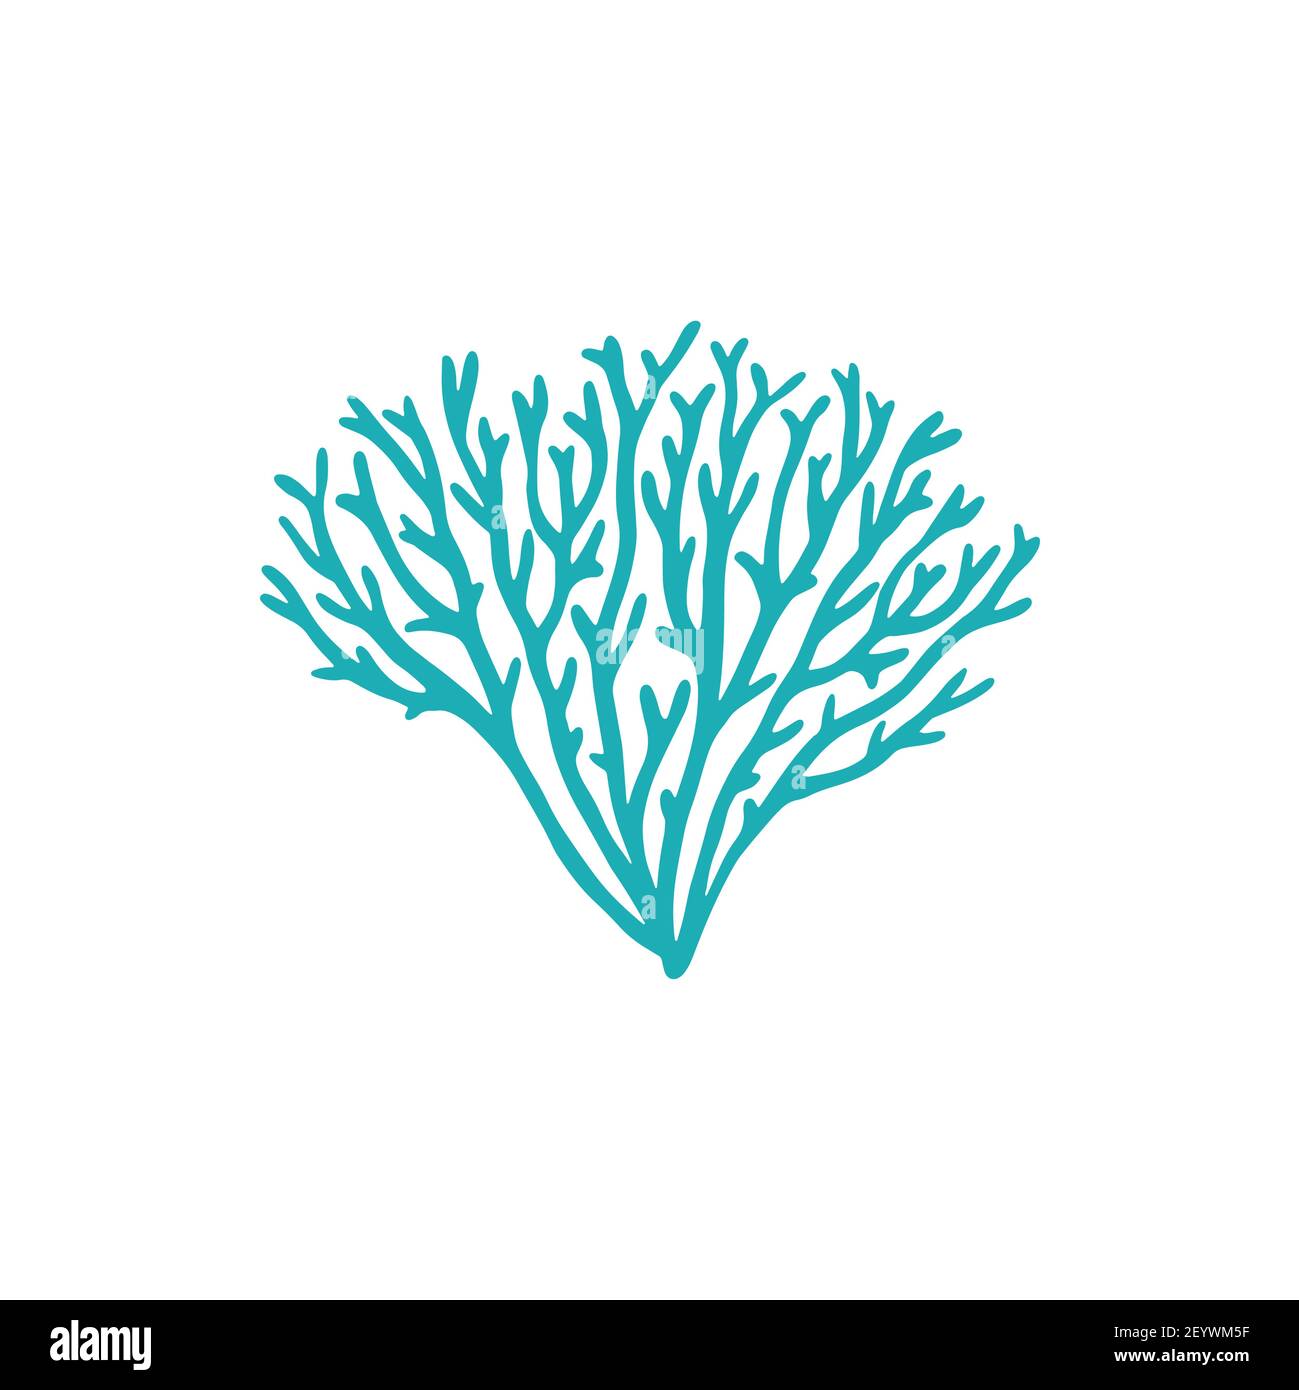 Galaxea sp., acropids pietra corallo isolato icona. Vettore galassia corallo, acquari alghe decorazione, corallo elemento barriere coralline. Morbida pianta subacquea e punta Illustrazione Vettoriale